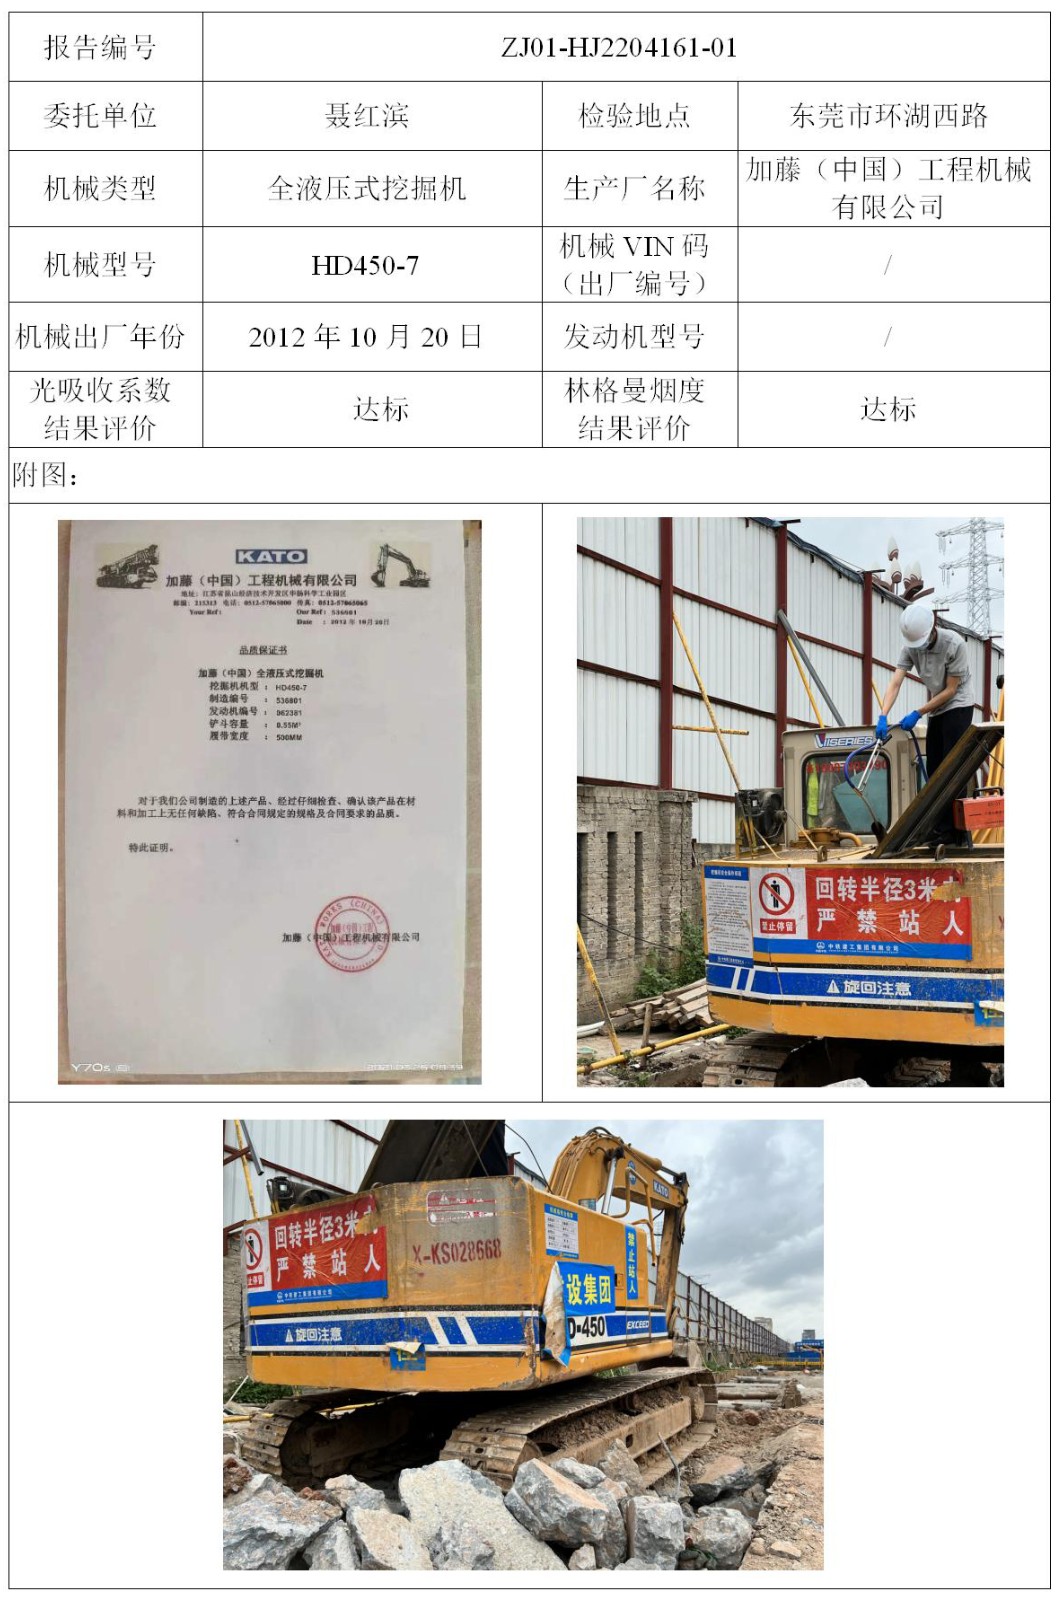 委托-ZJ01-HJ2204161-01聂红滨的非道路机械设备（叉车废气）二维码-温家莉_01.jpg